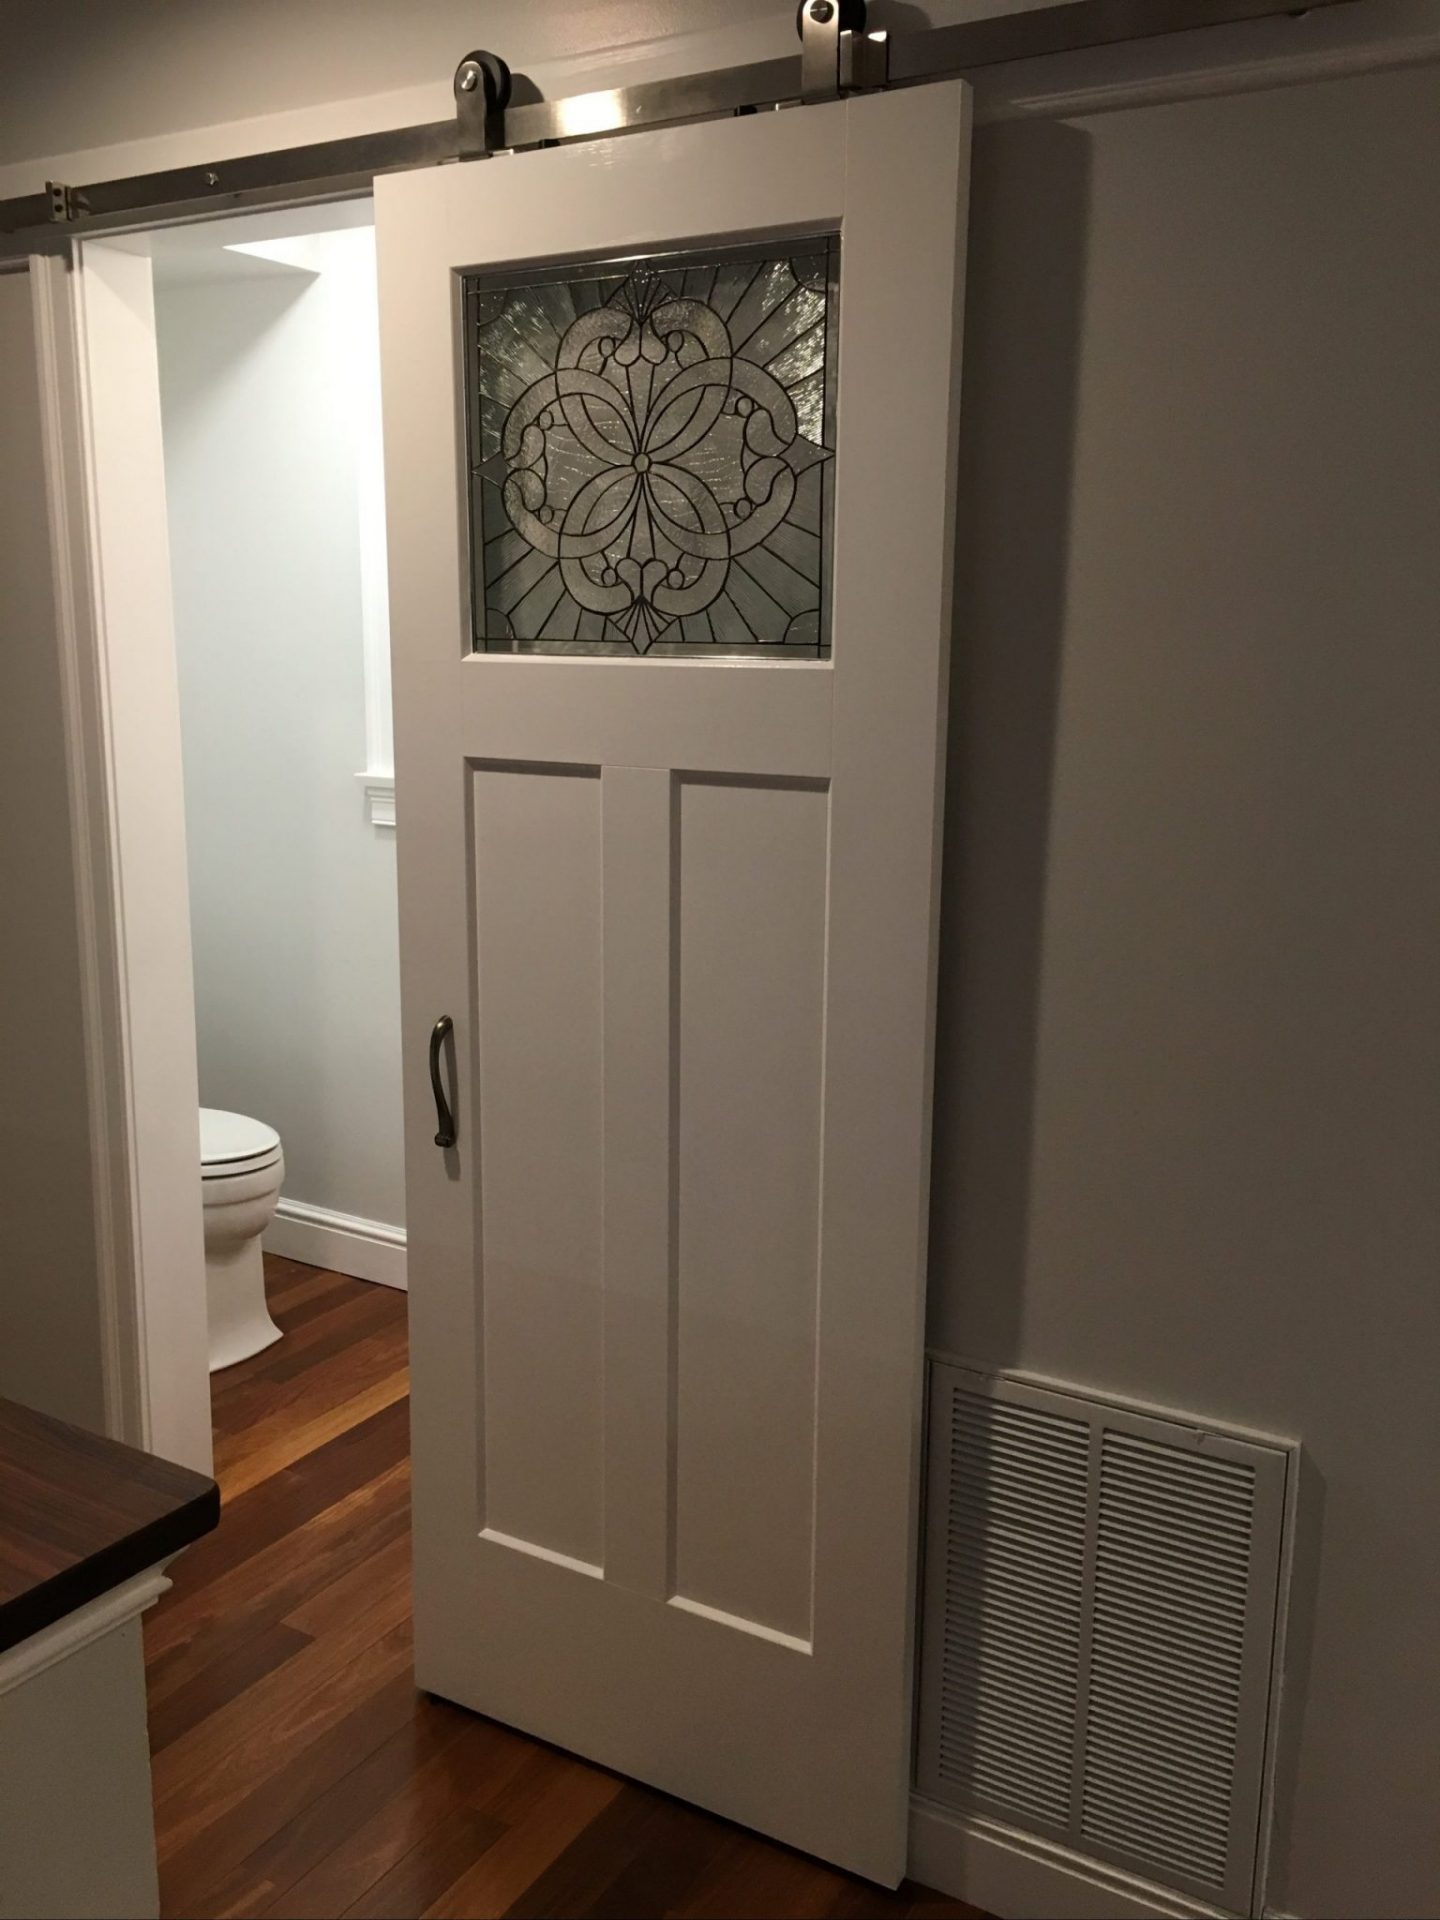 Stained Glass Beveled Sliding Barn Bathroom Door